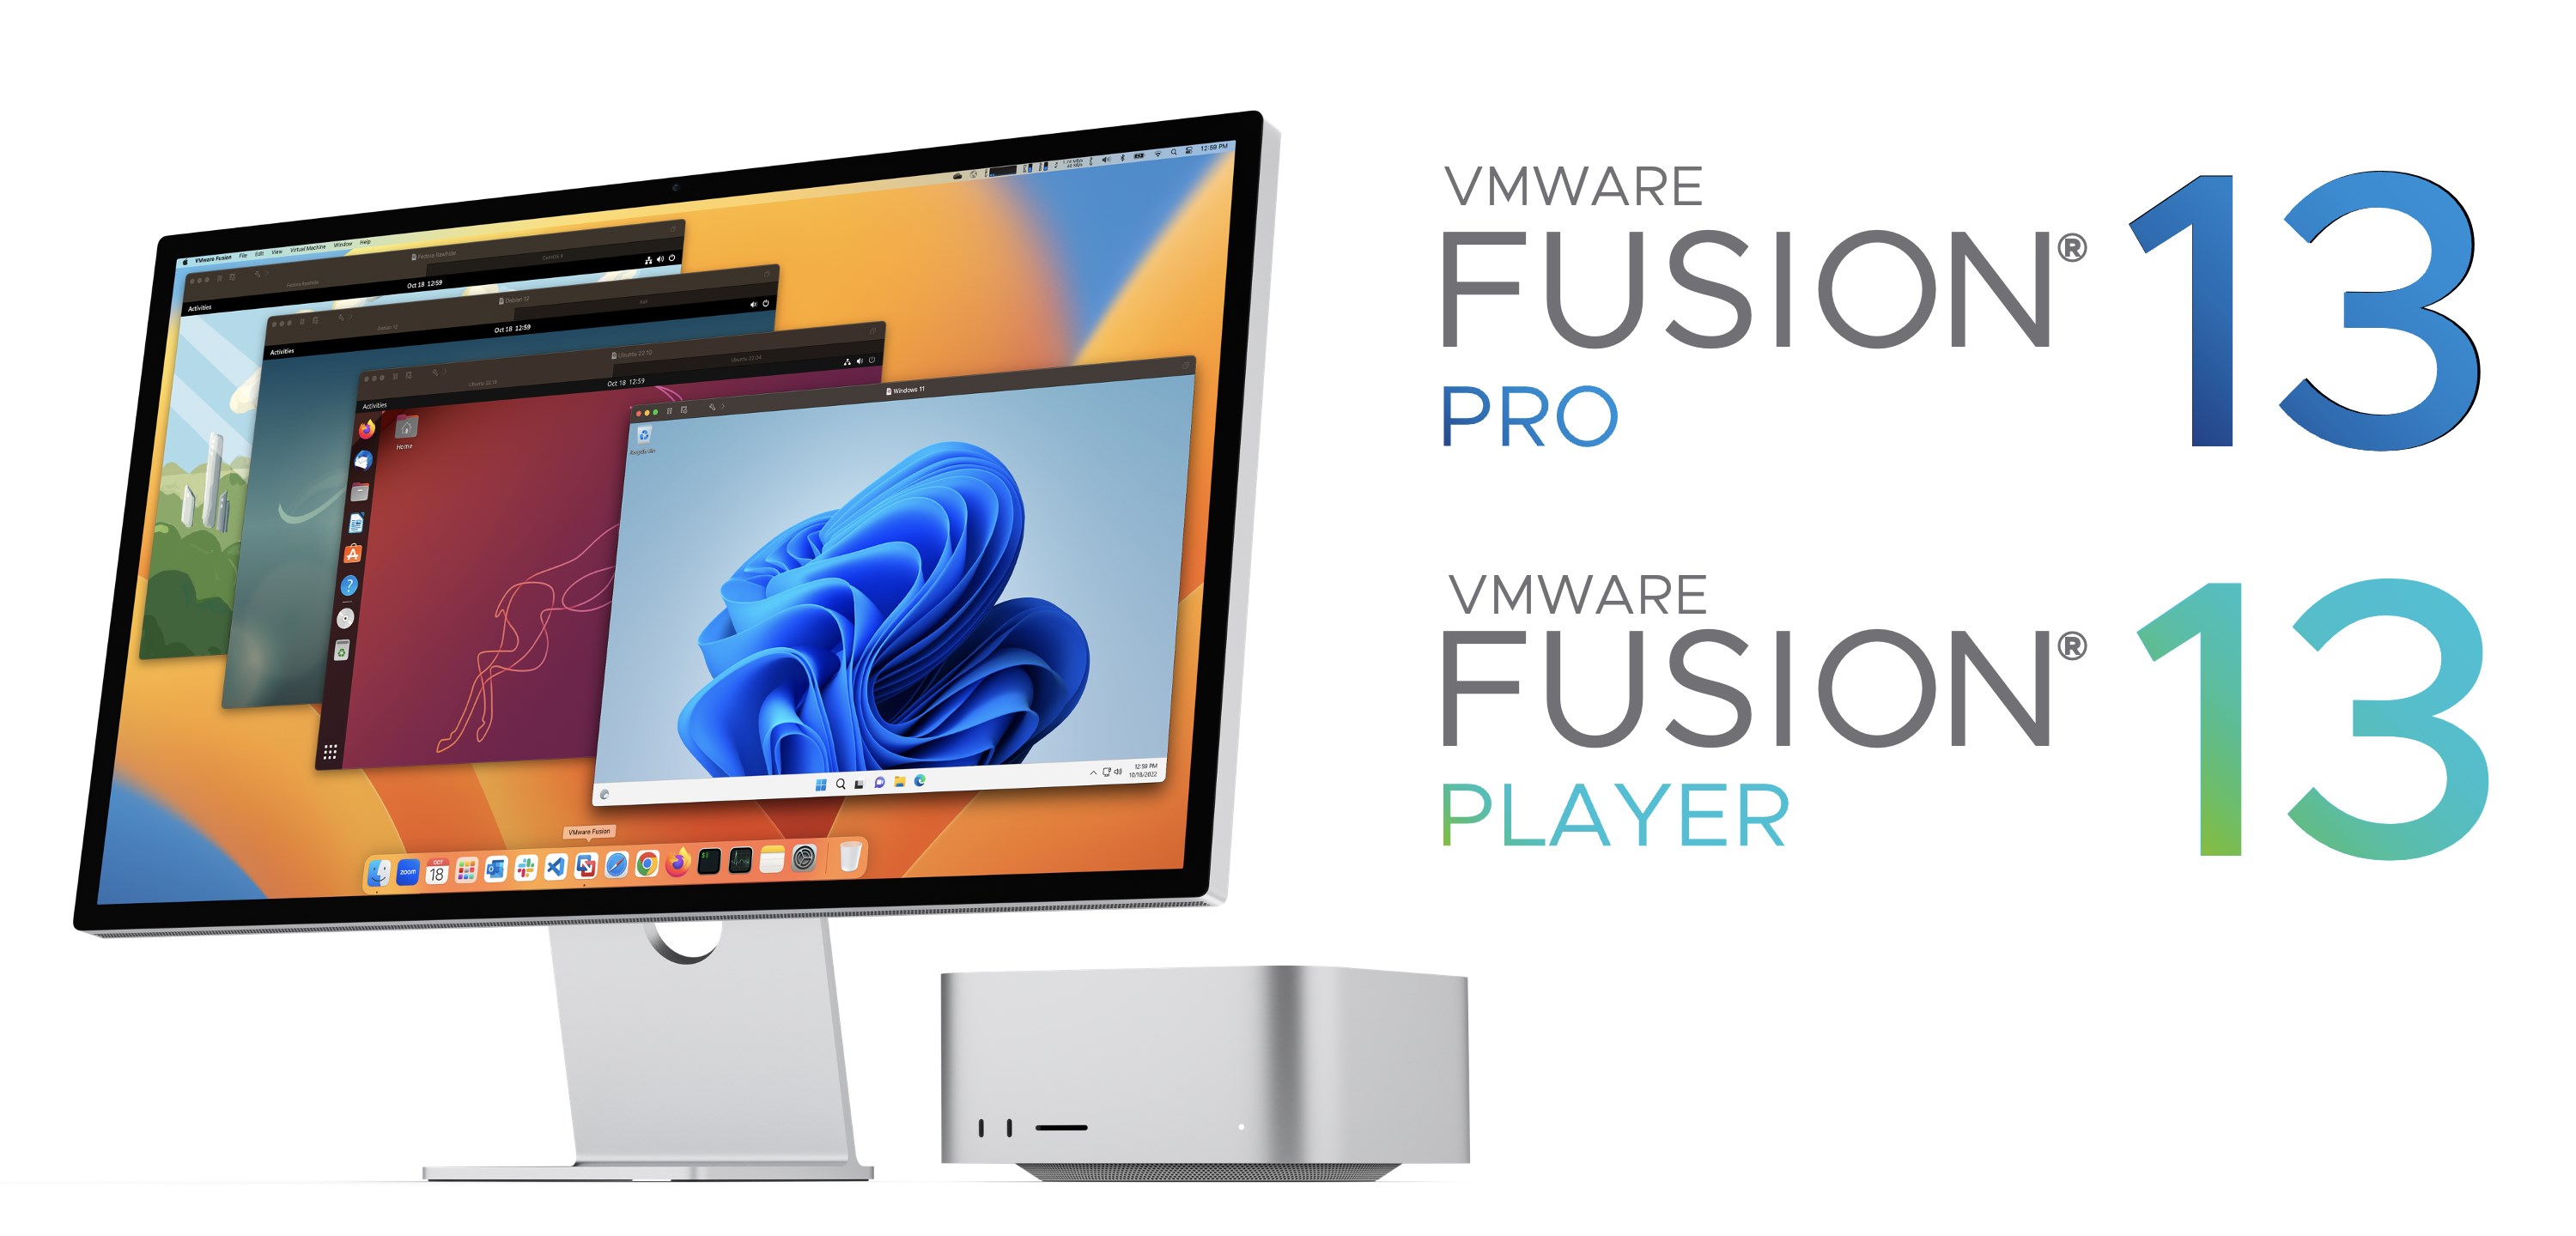 VMWare Fusion 13 Pro